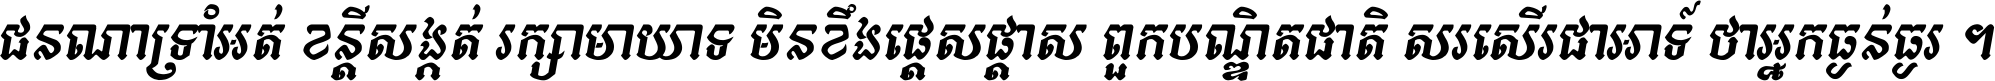 Kh Baphnom Pheaktra Italic